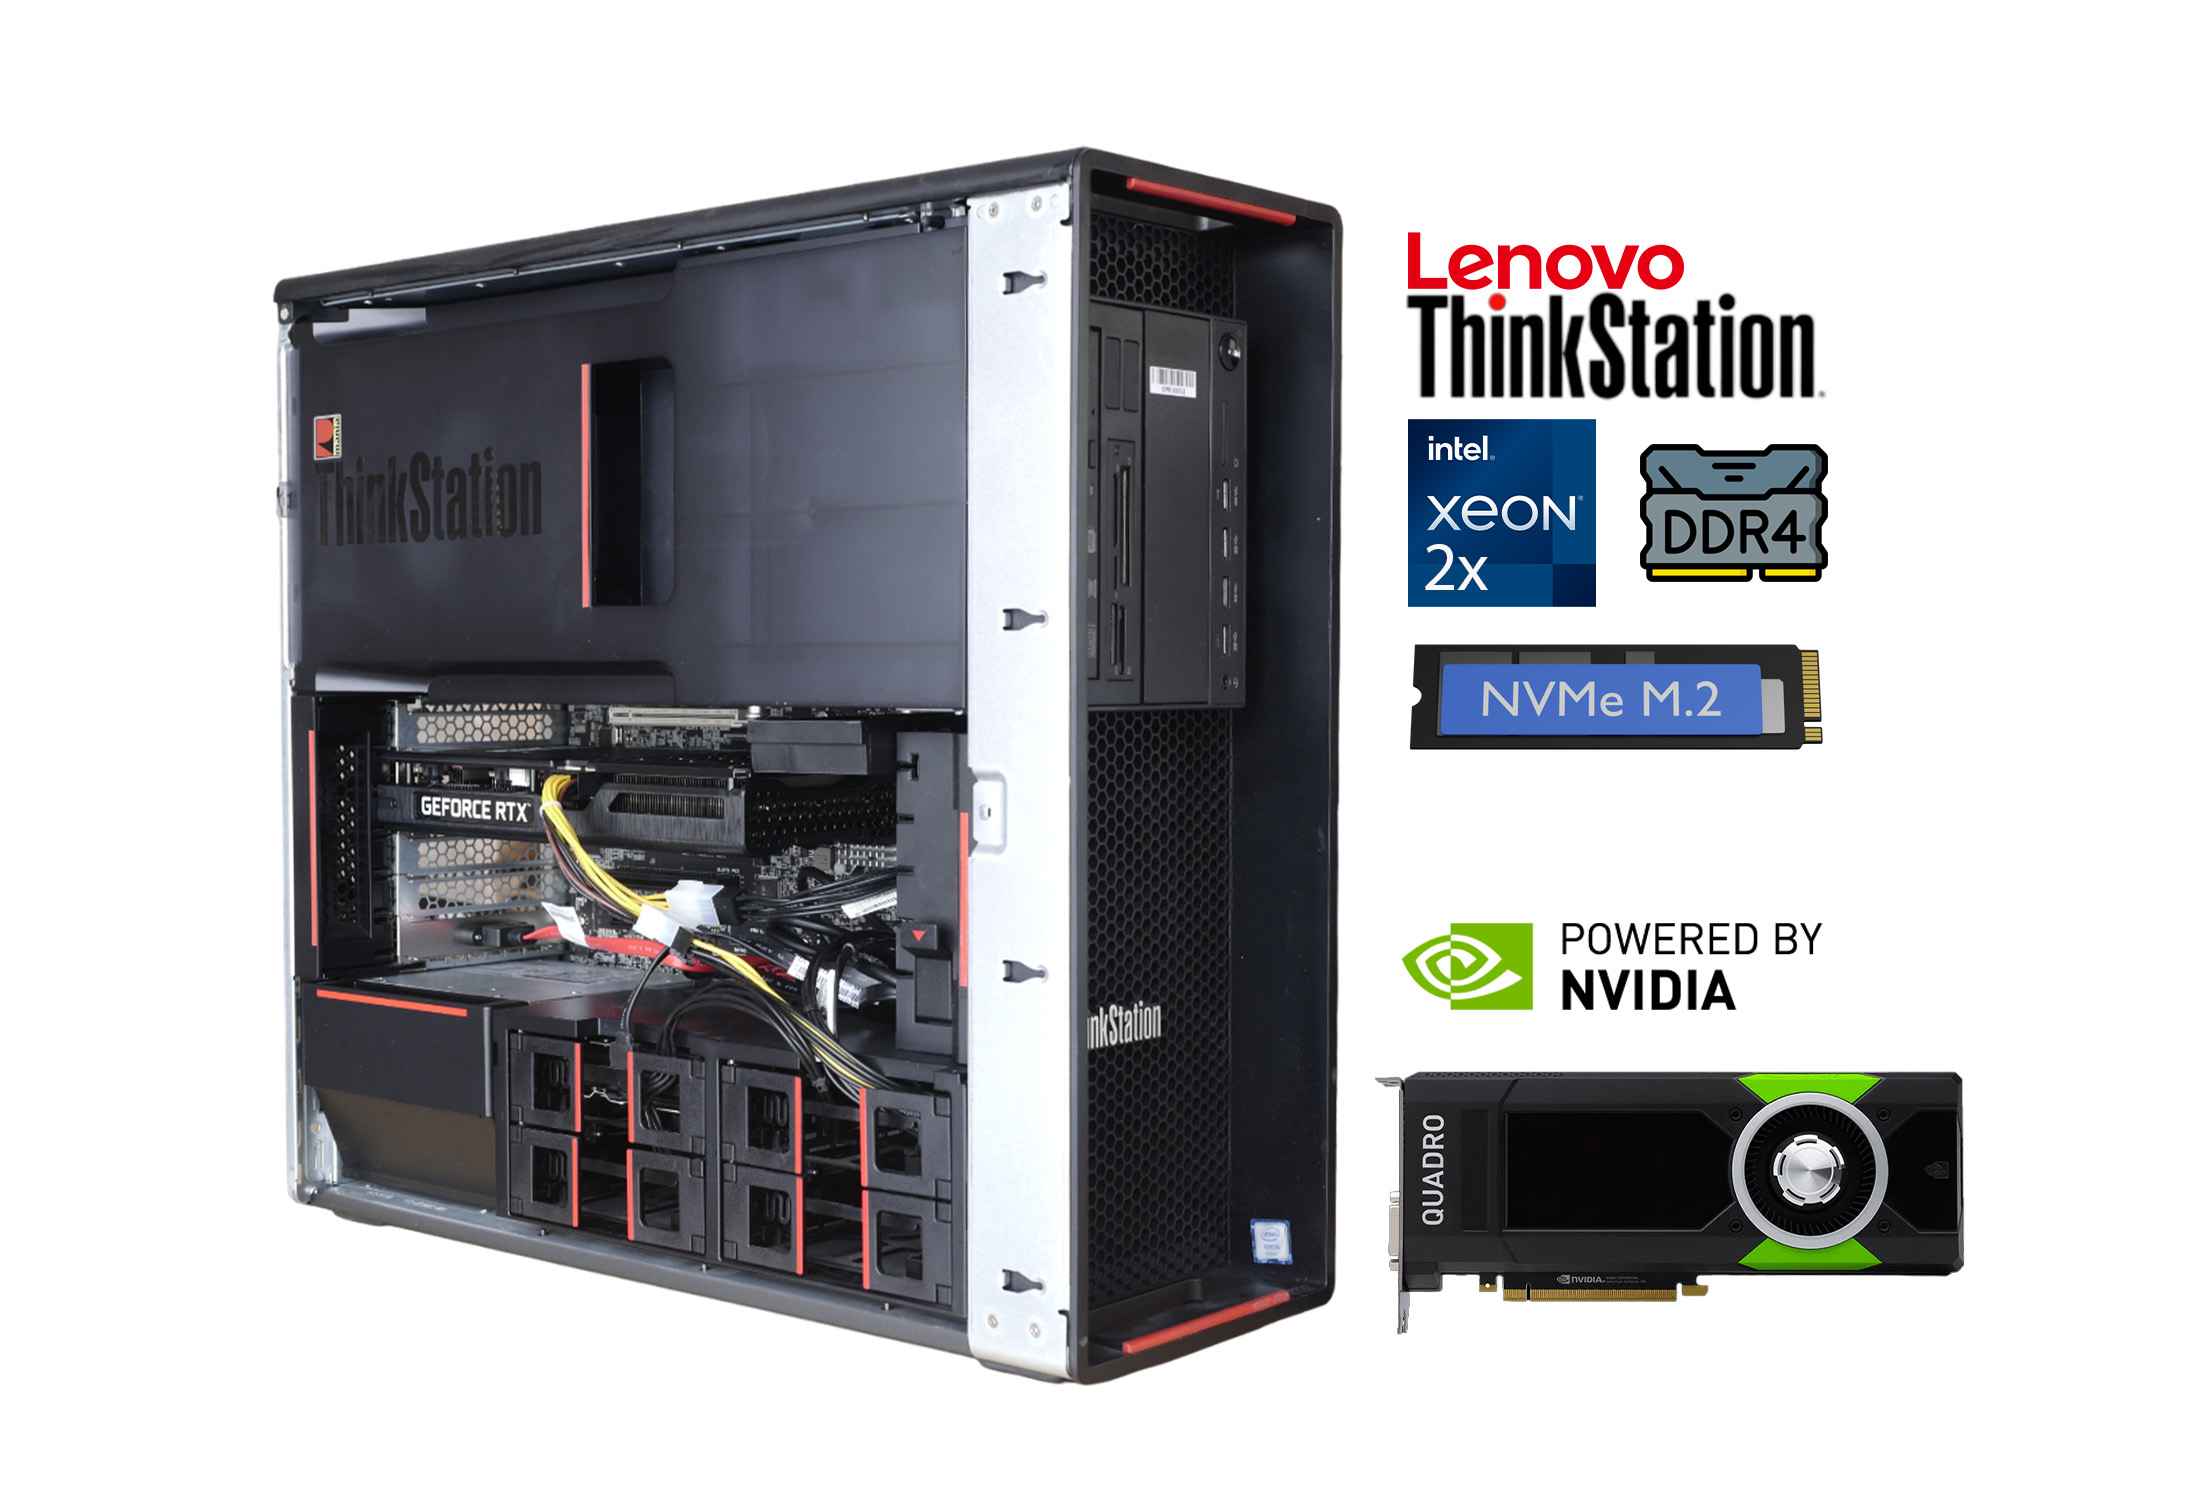 Lenovo Thinkstation P700 2x Xeon E5-2687W v3 DDR4 NVMe Quadro M4000